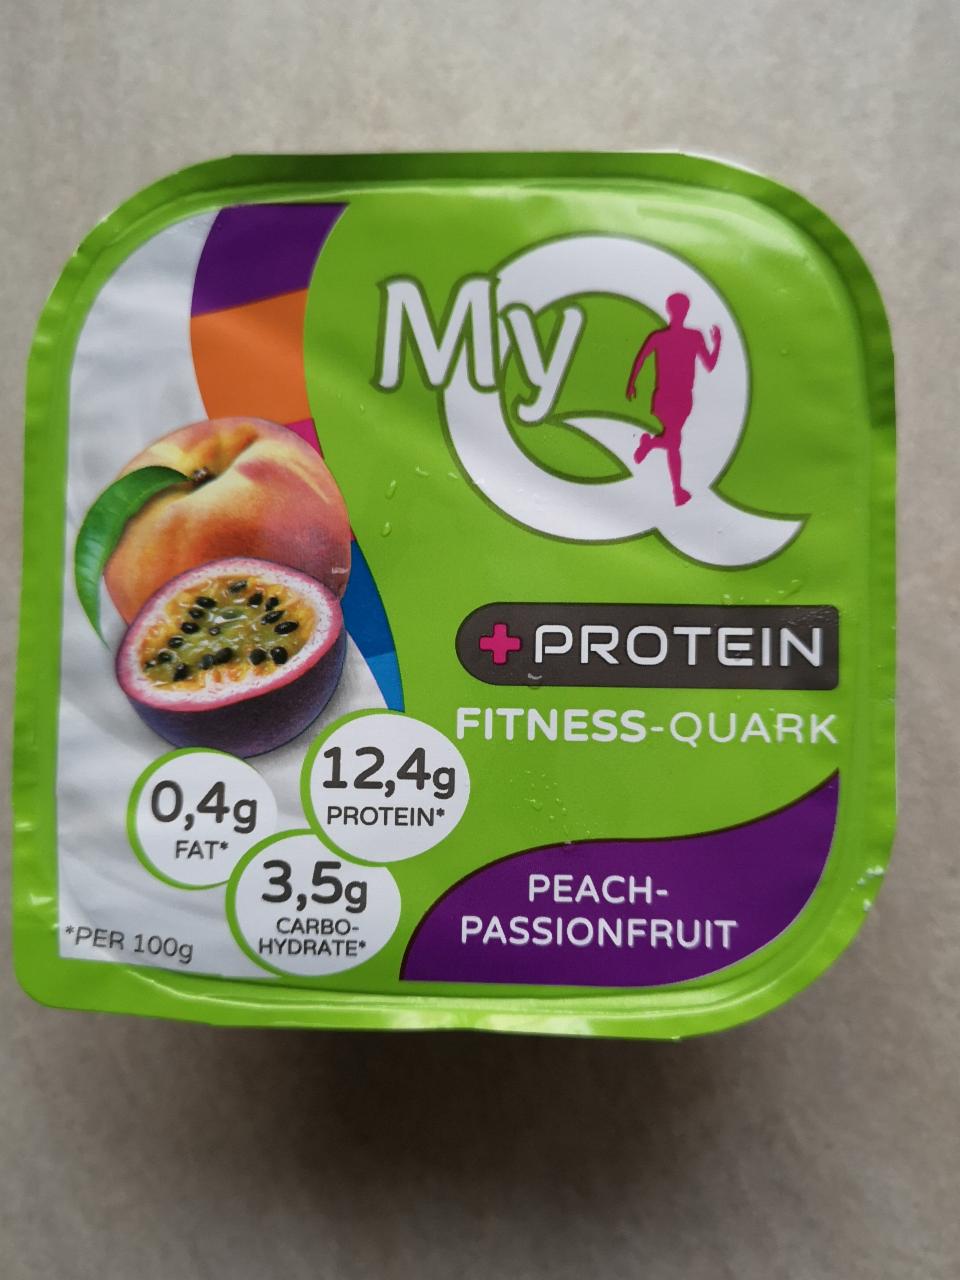 Képek - Protein fitness-quark MyQ